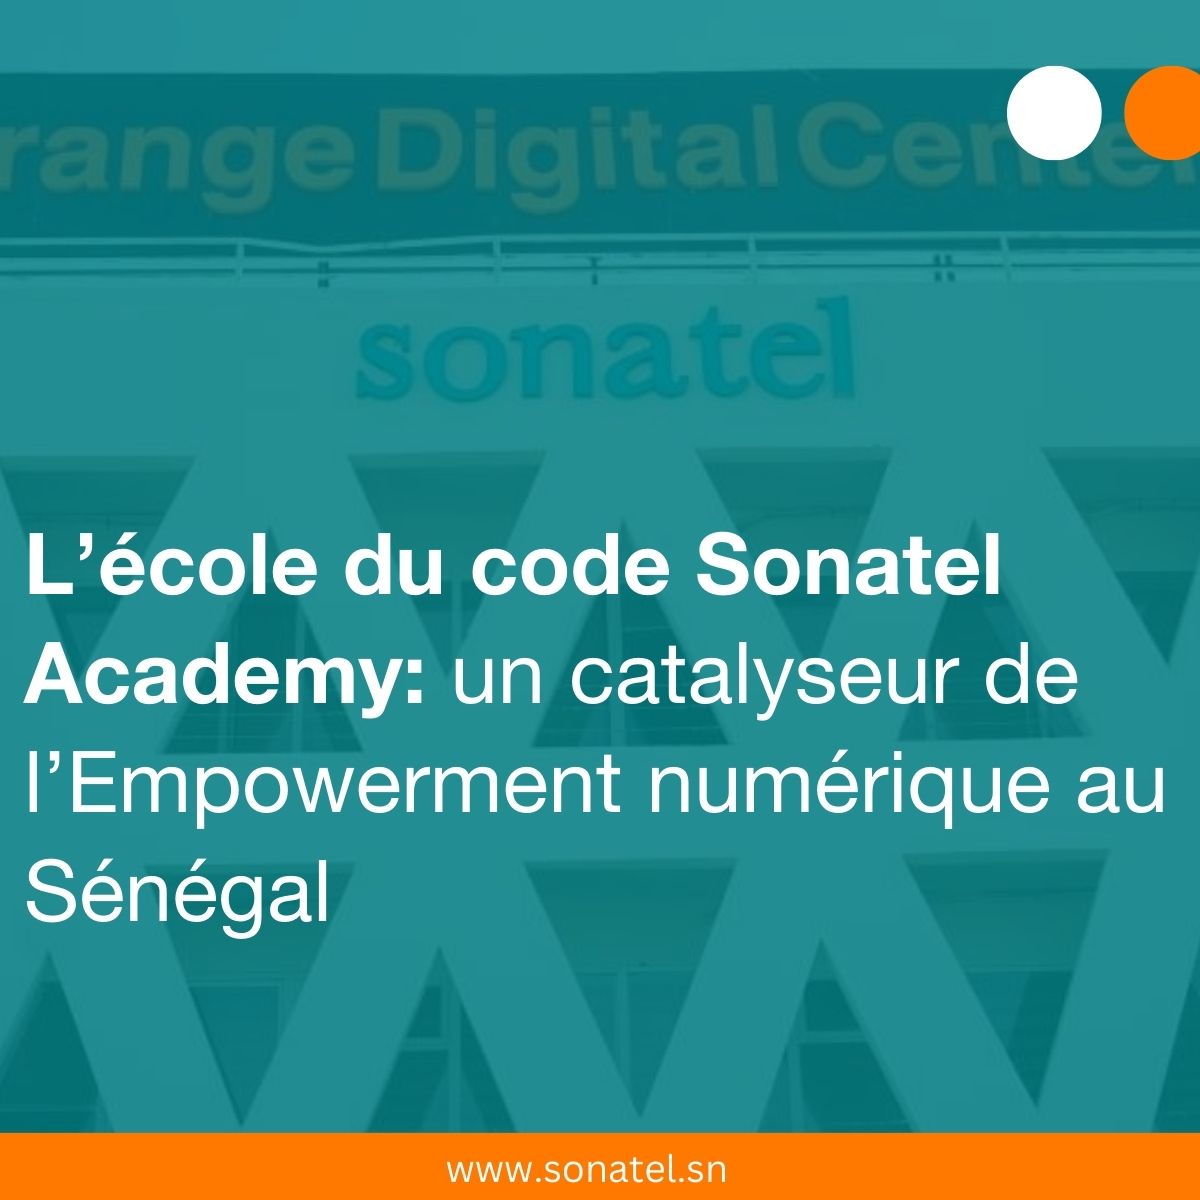 L’école du code Sonatel Academy: un catalyseur de l’Empowerment numérique au Sénégal